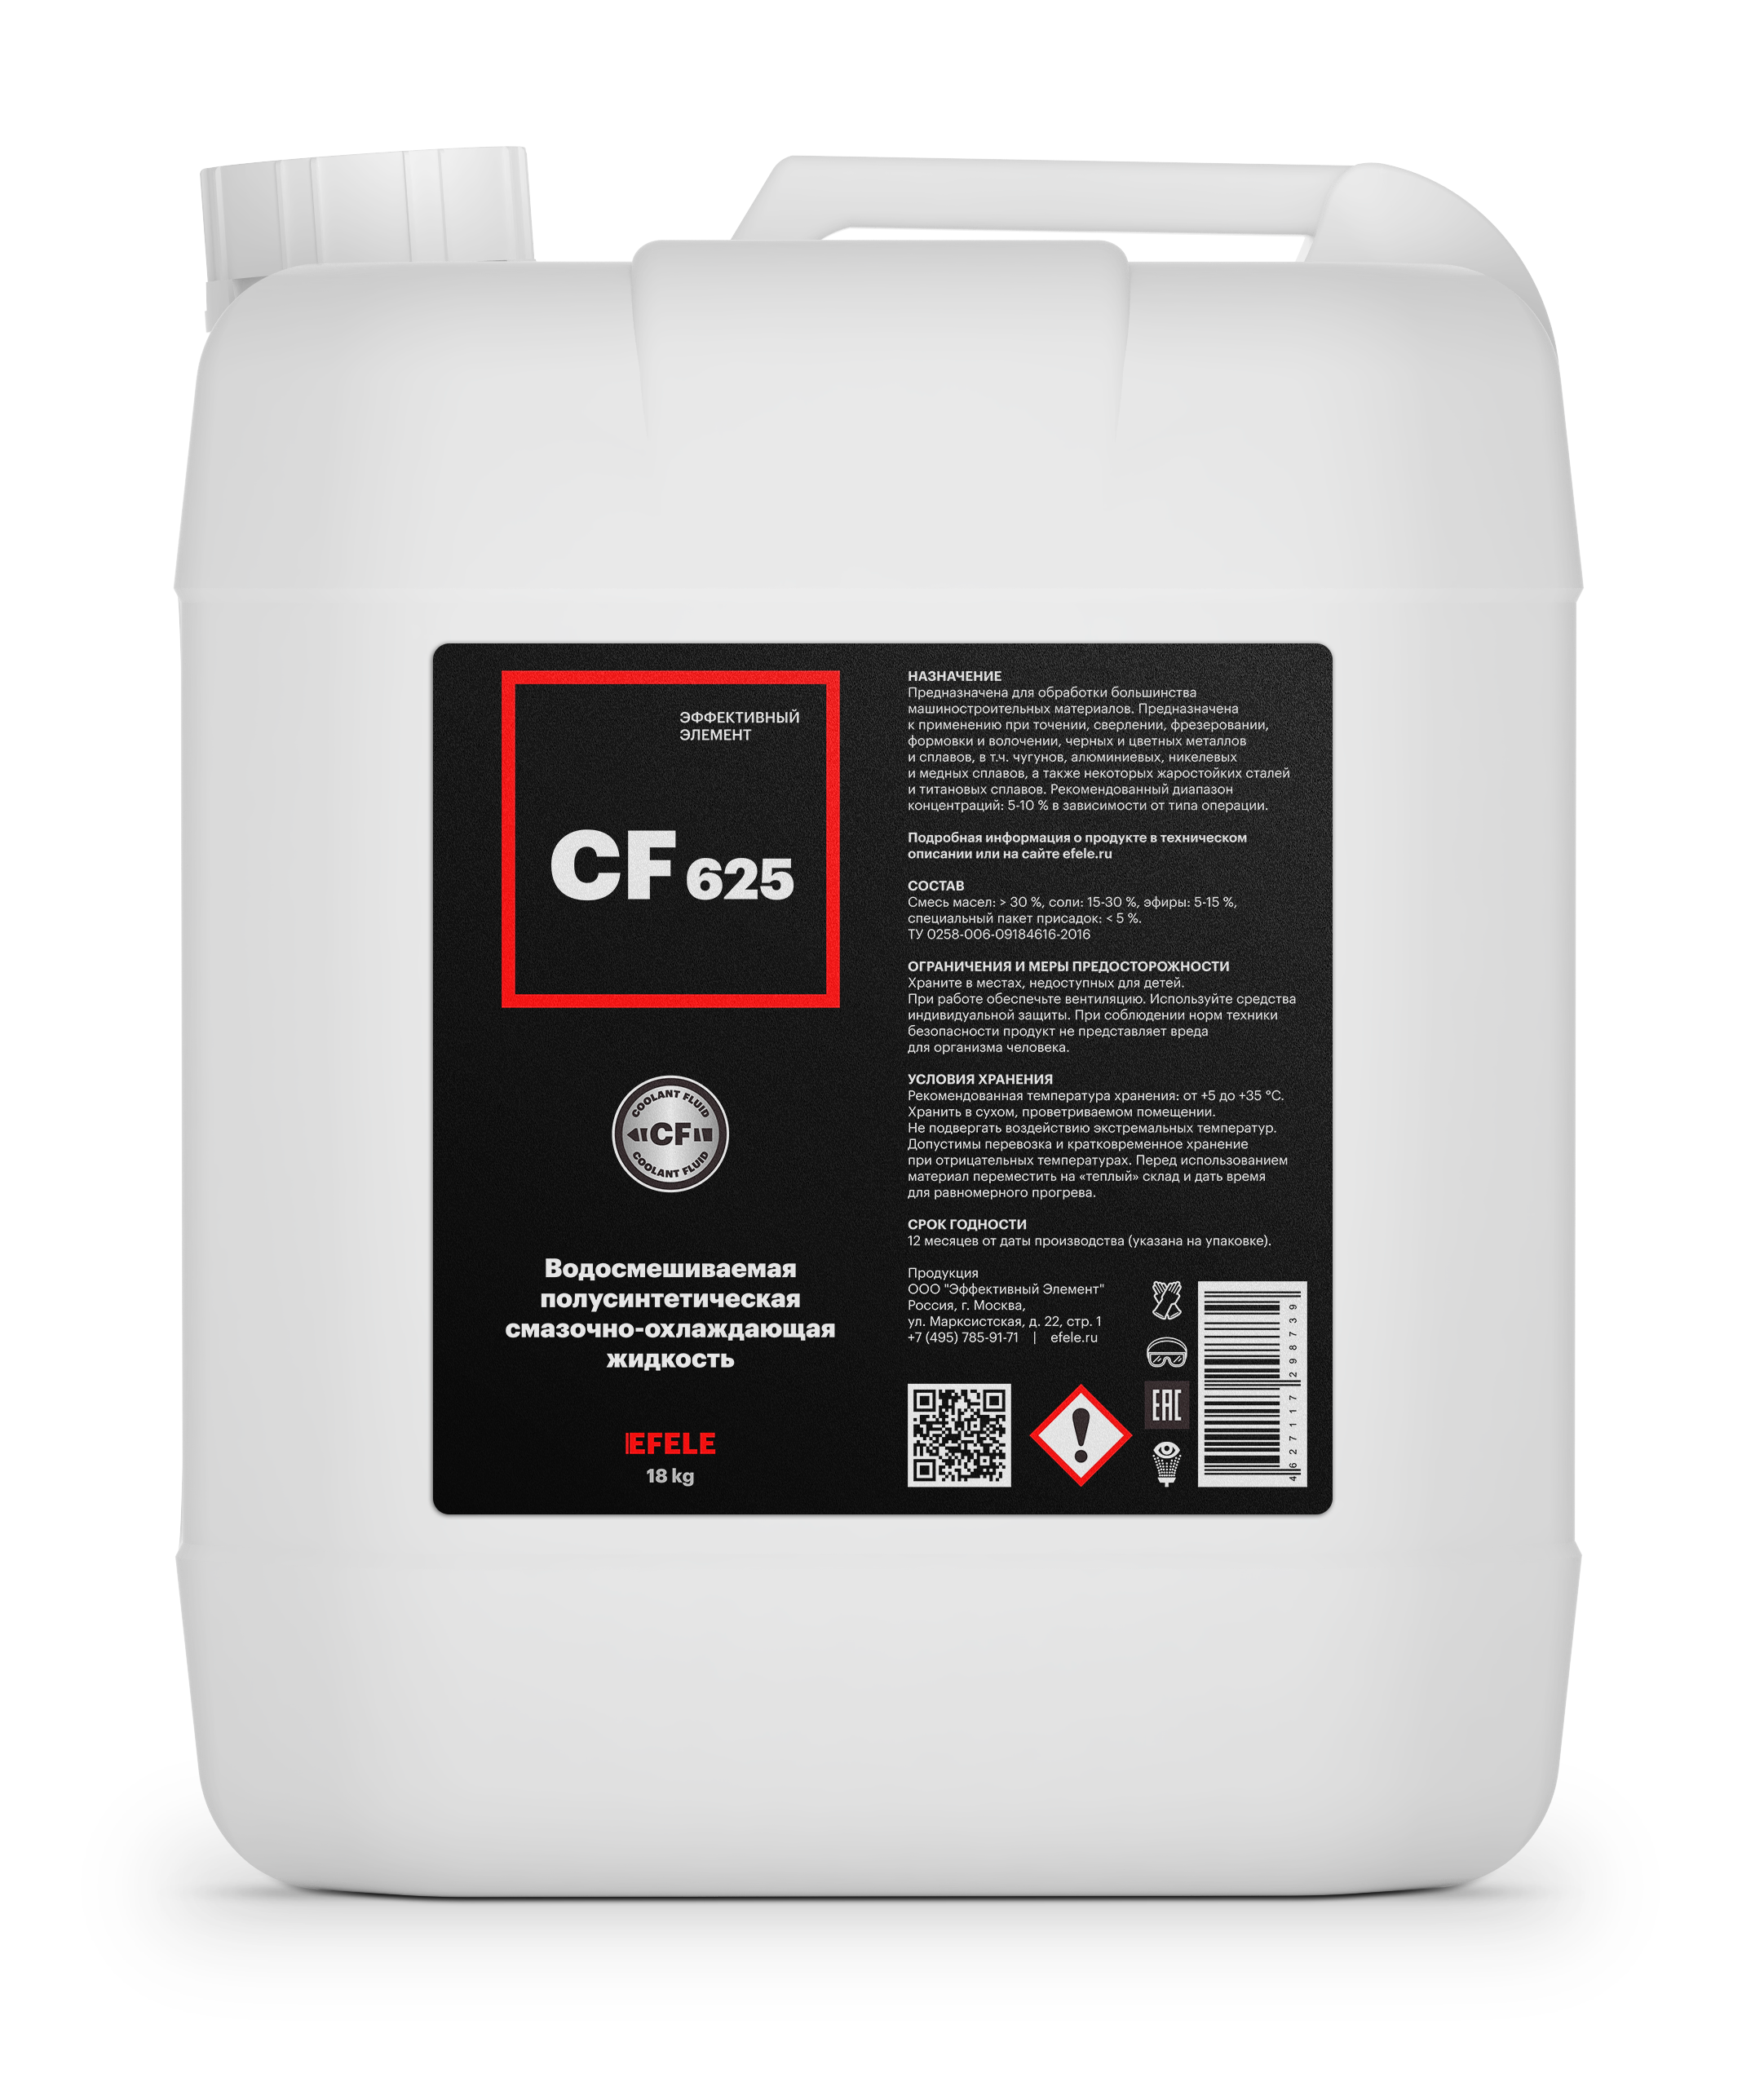 Полусинтетическая водорастворимая СОЖ EFELE CF-625 (18 кг)